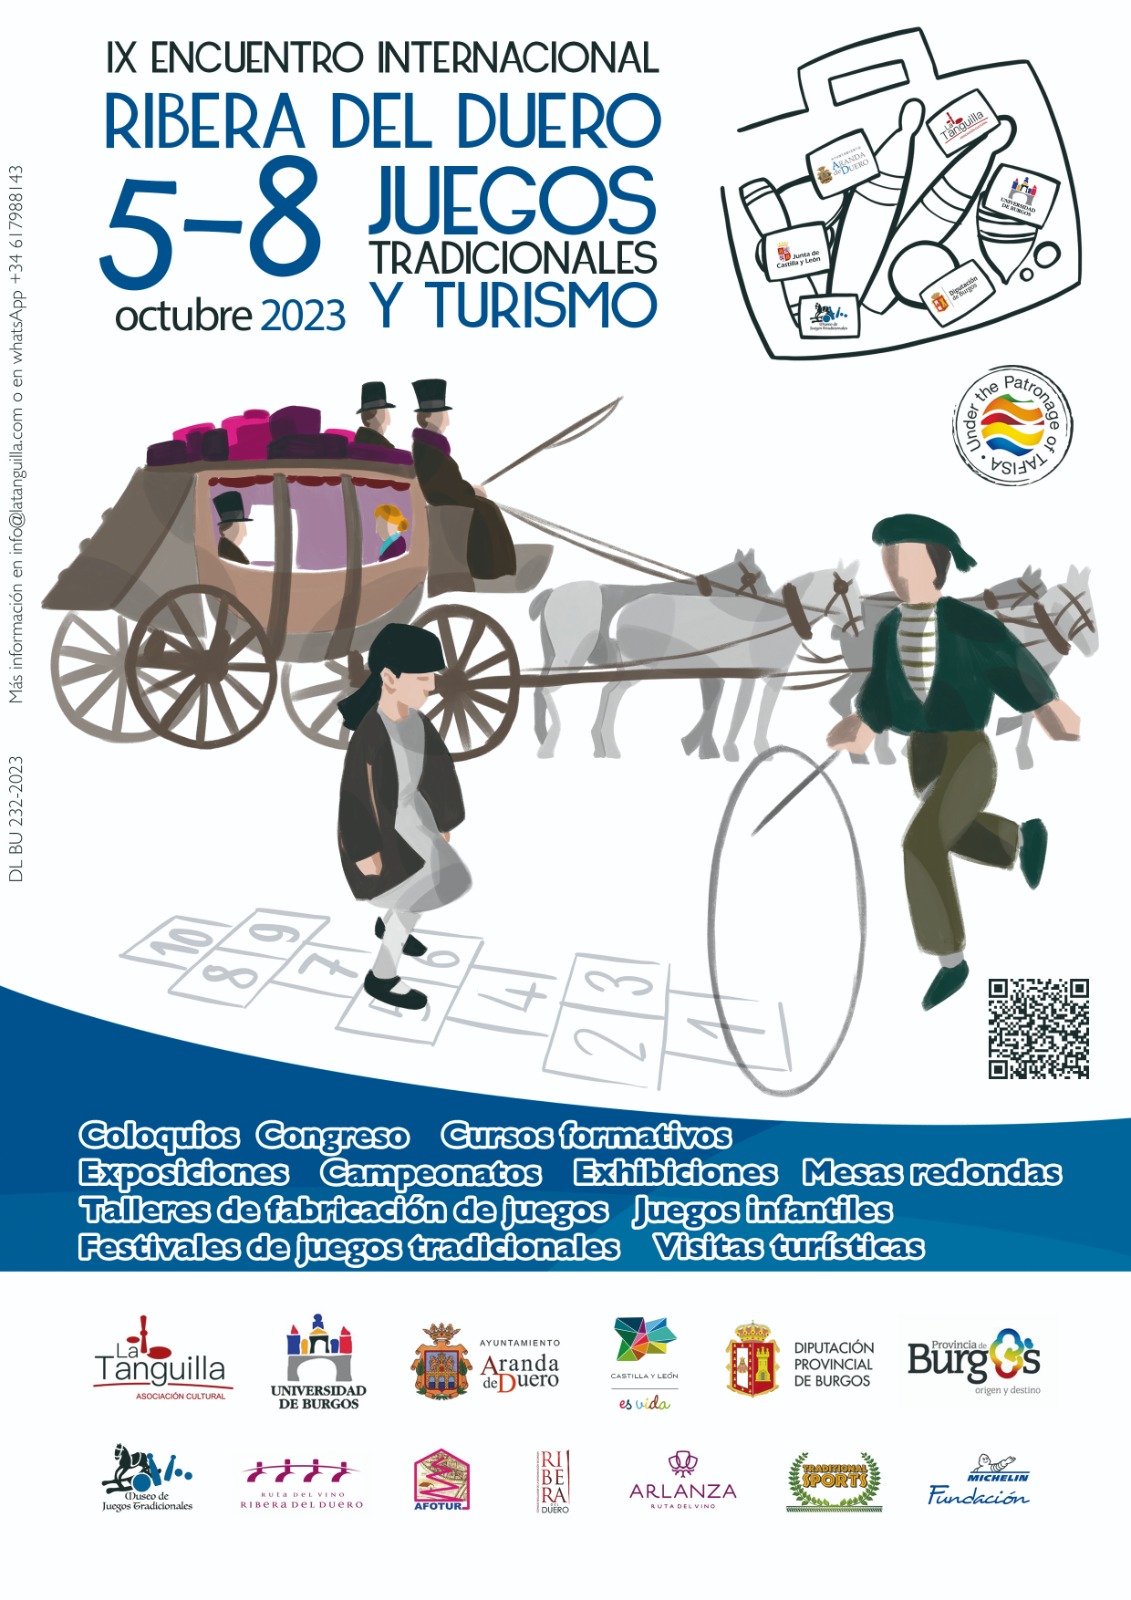 IX Encuentro Internacional Ribera del Duero, Juegos Tradicionales y Turismo